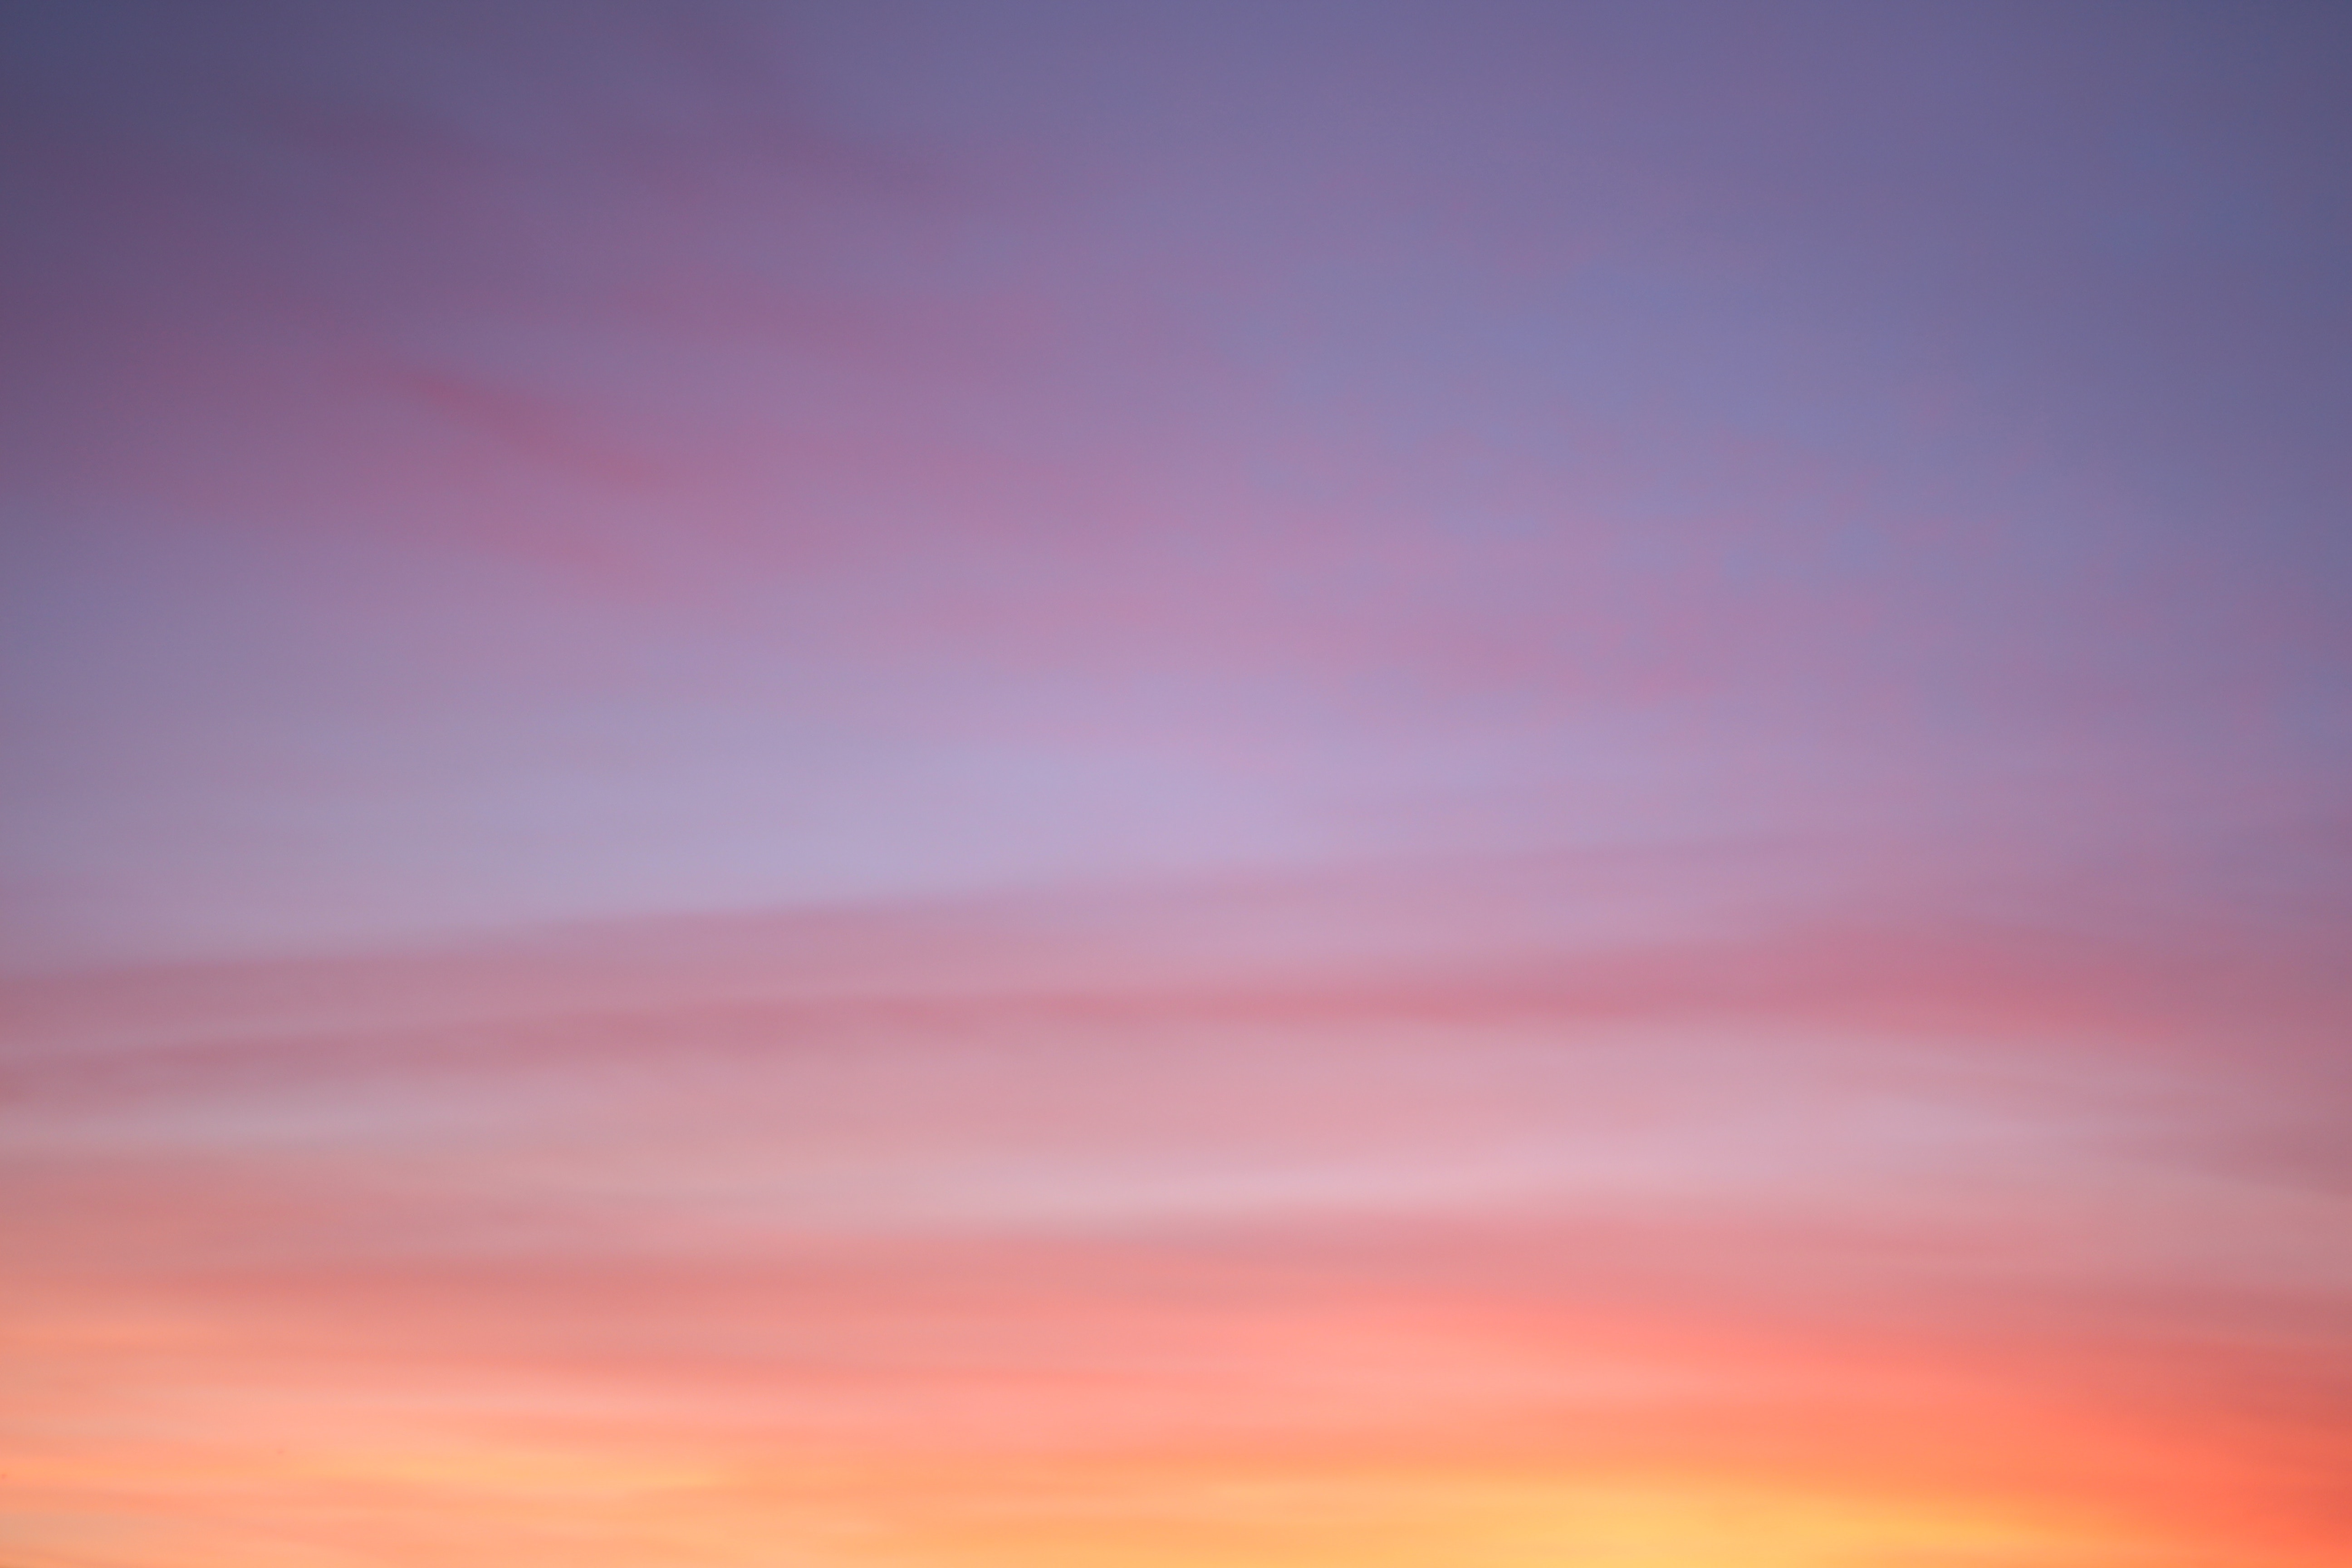 Full HD sunset sky wallpaper